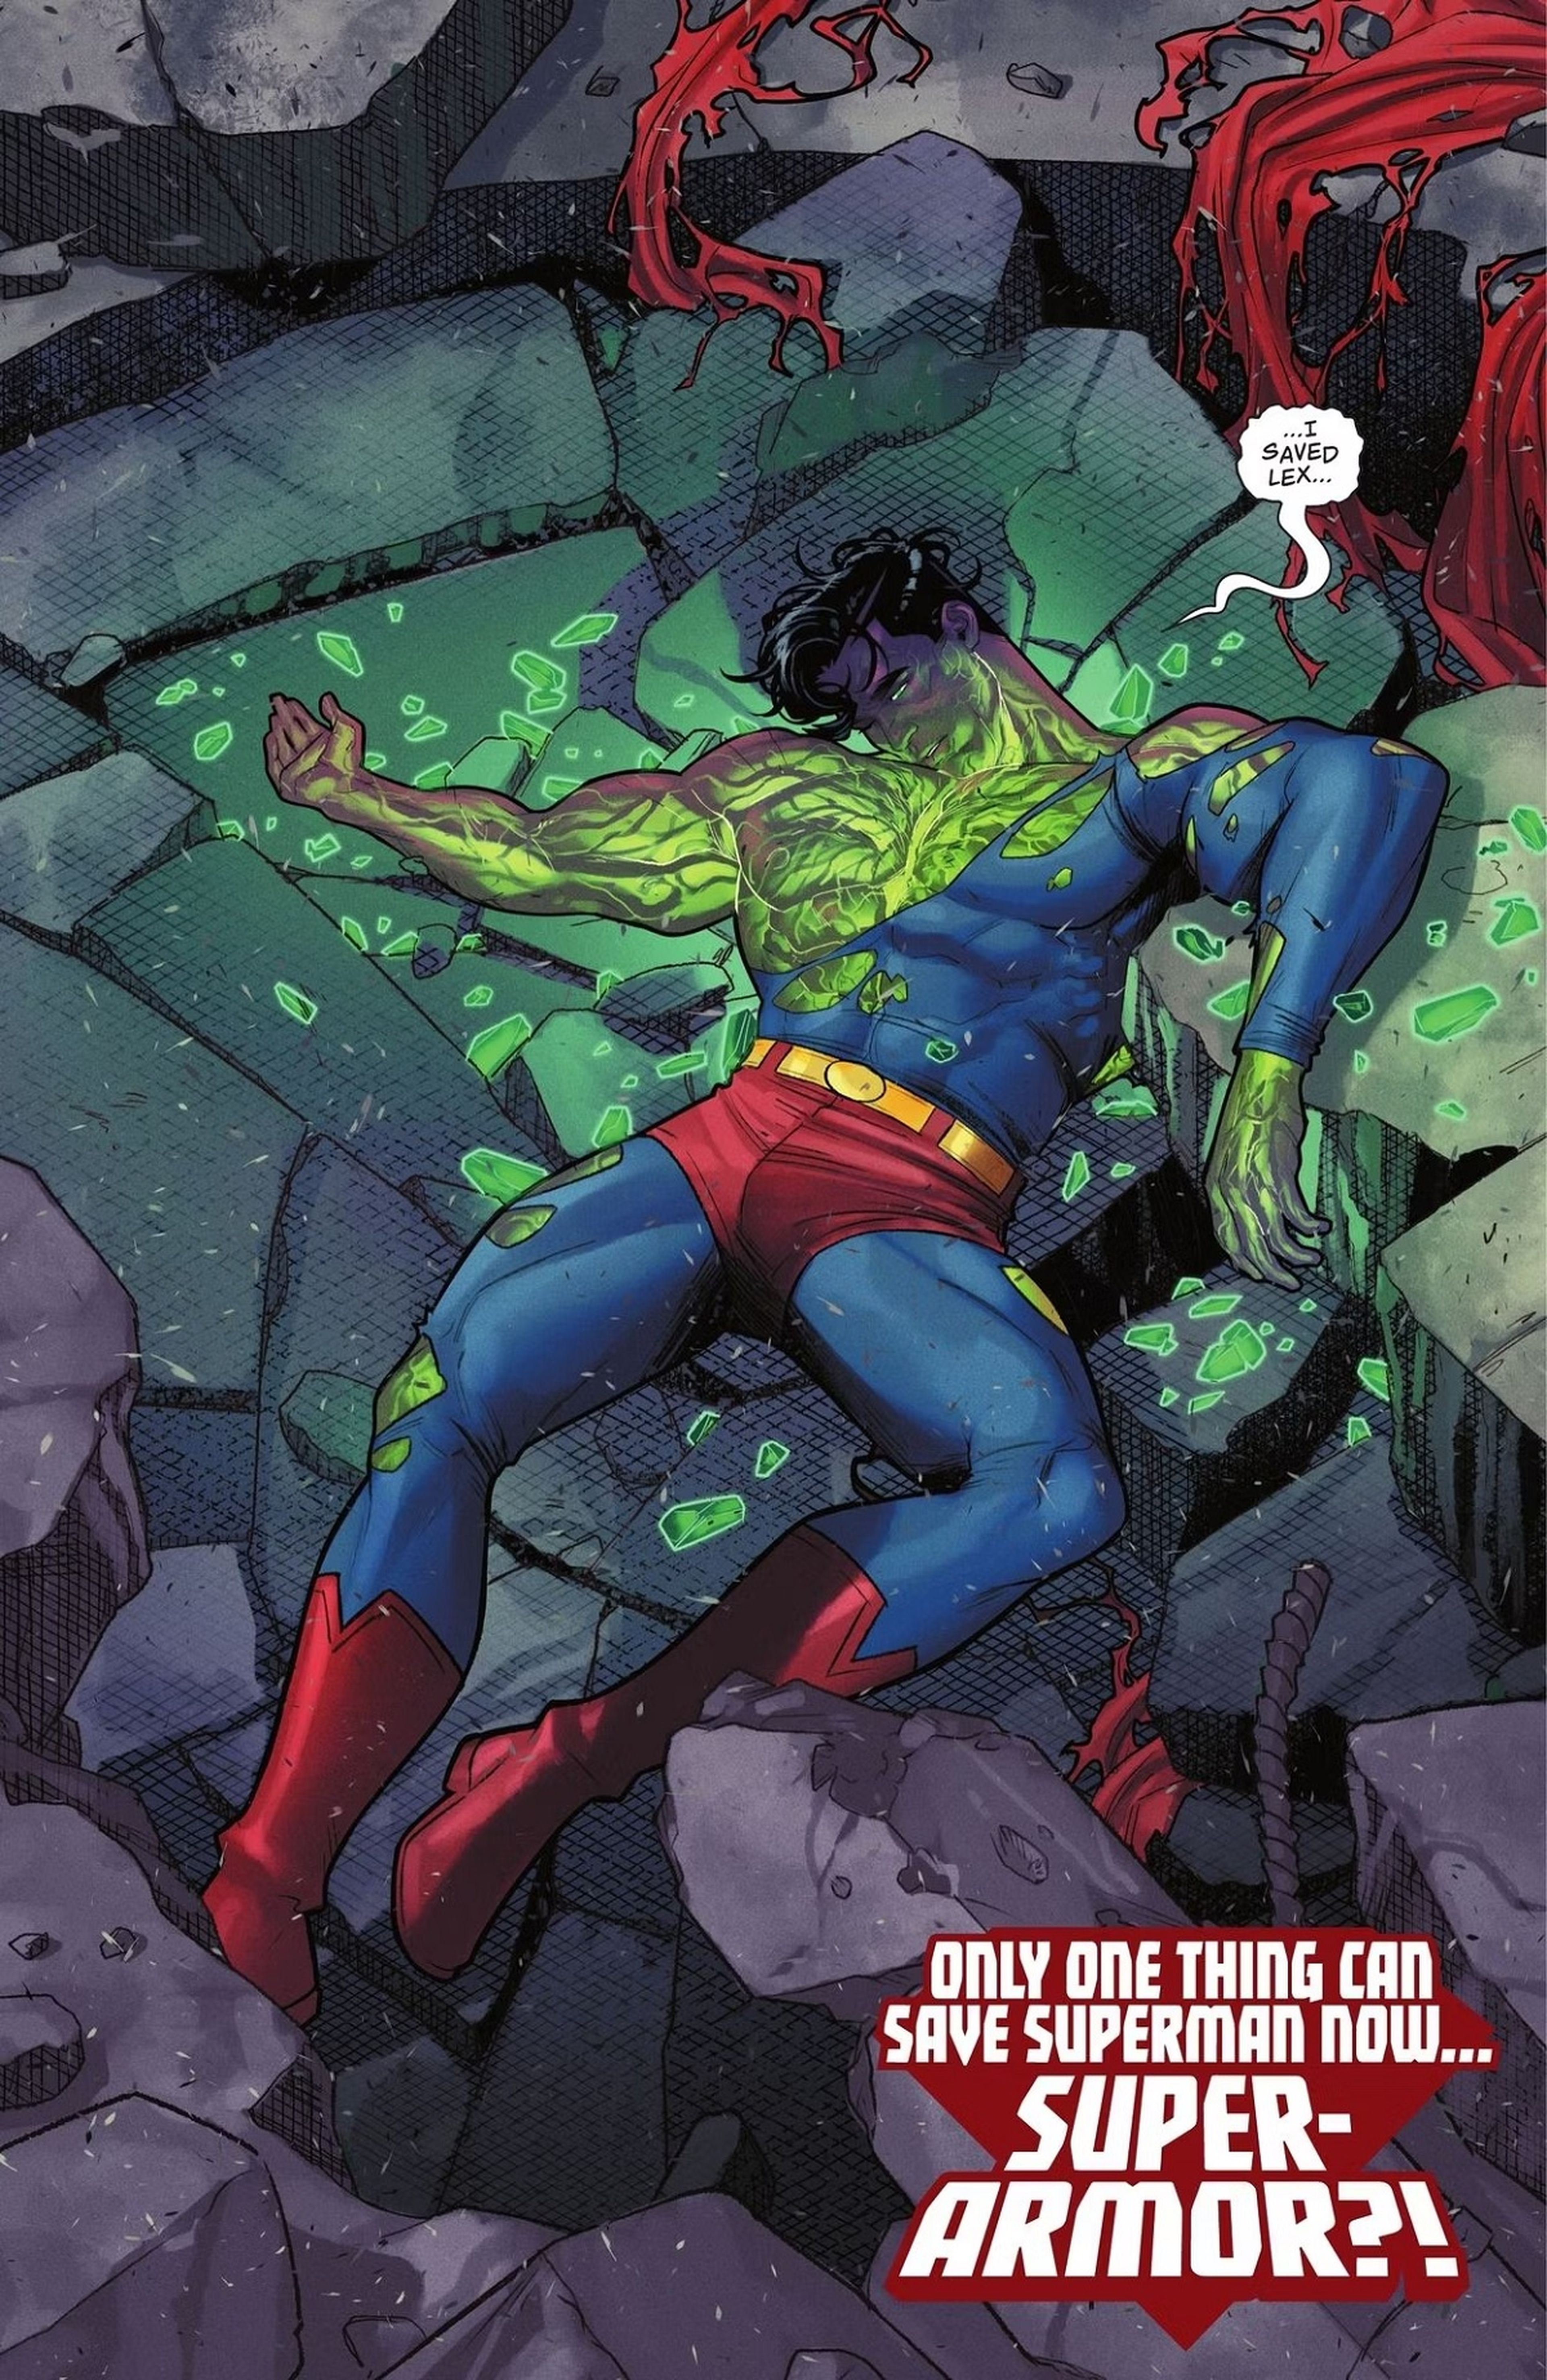 La muerte de Superman con kryptonita